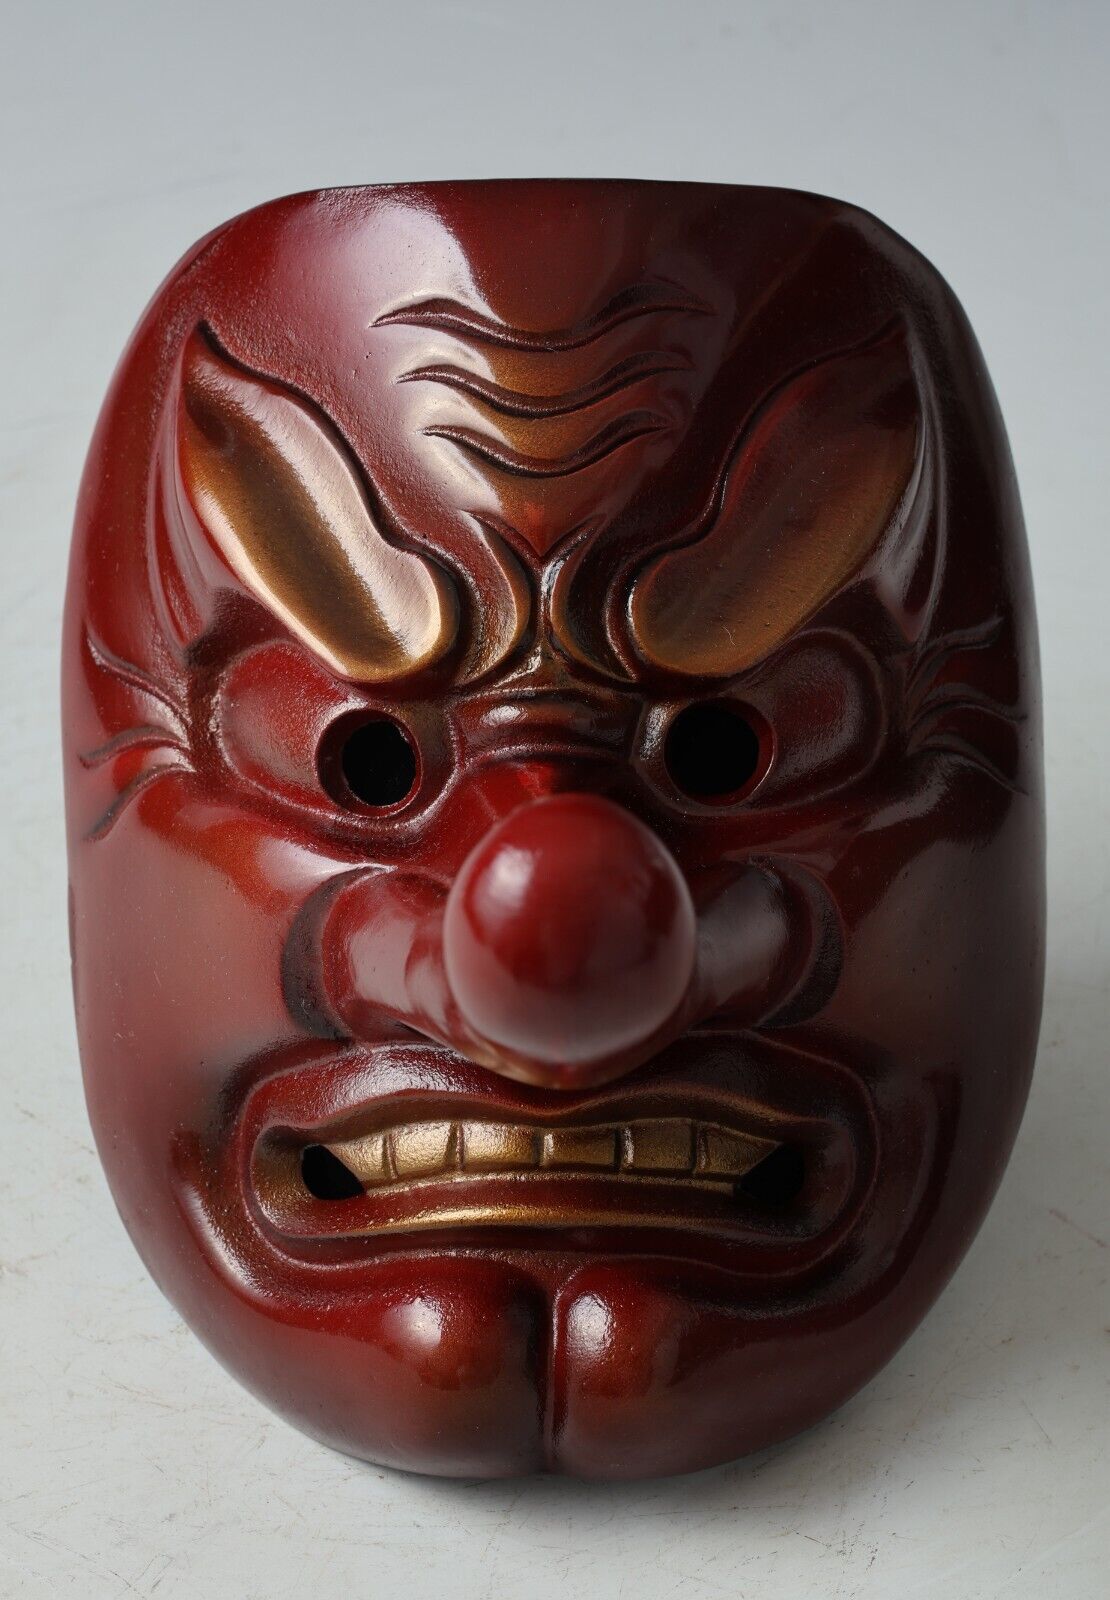 Beautiful Vintage Japanese Iron Buddhism Mask -Tengu- Buddhism Mask Plaque